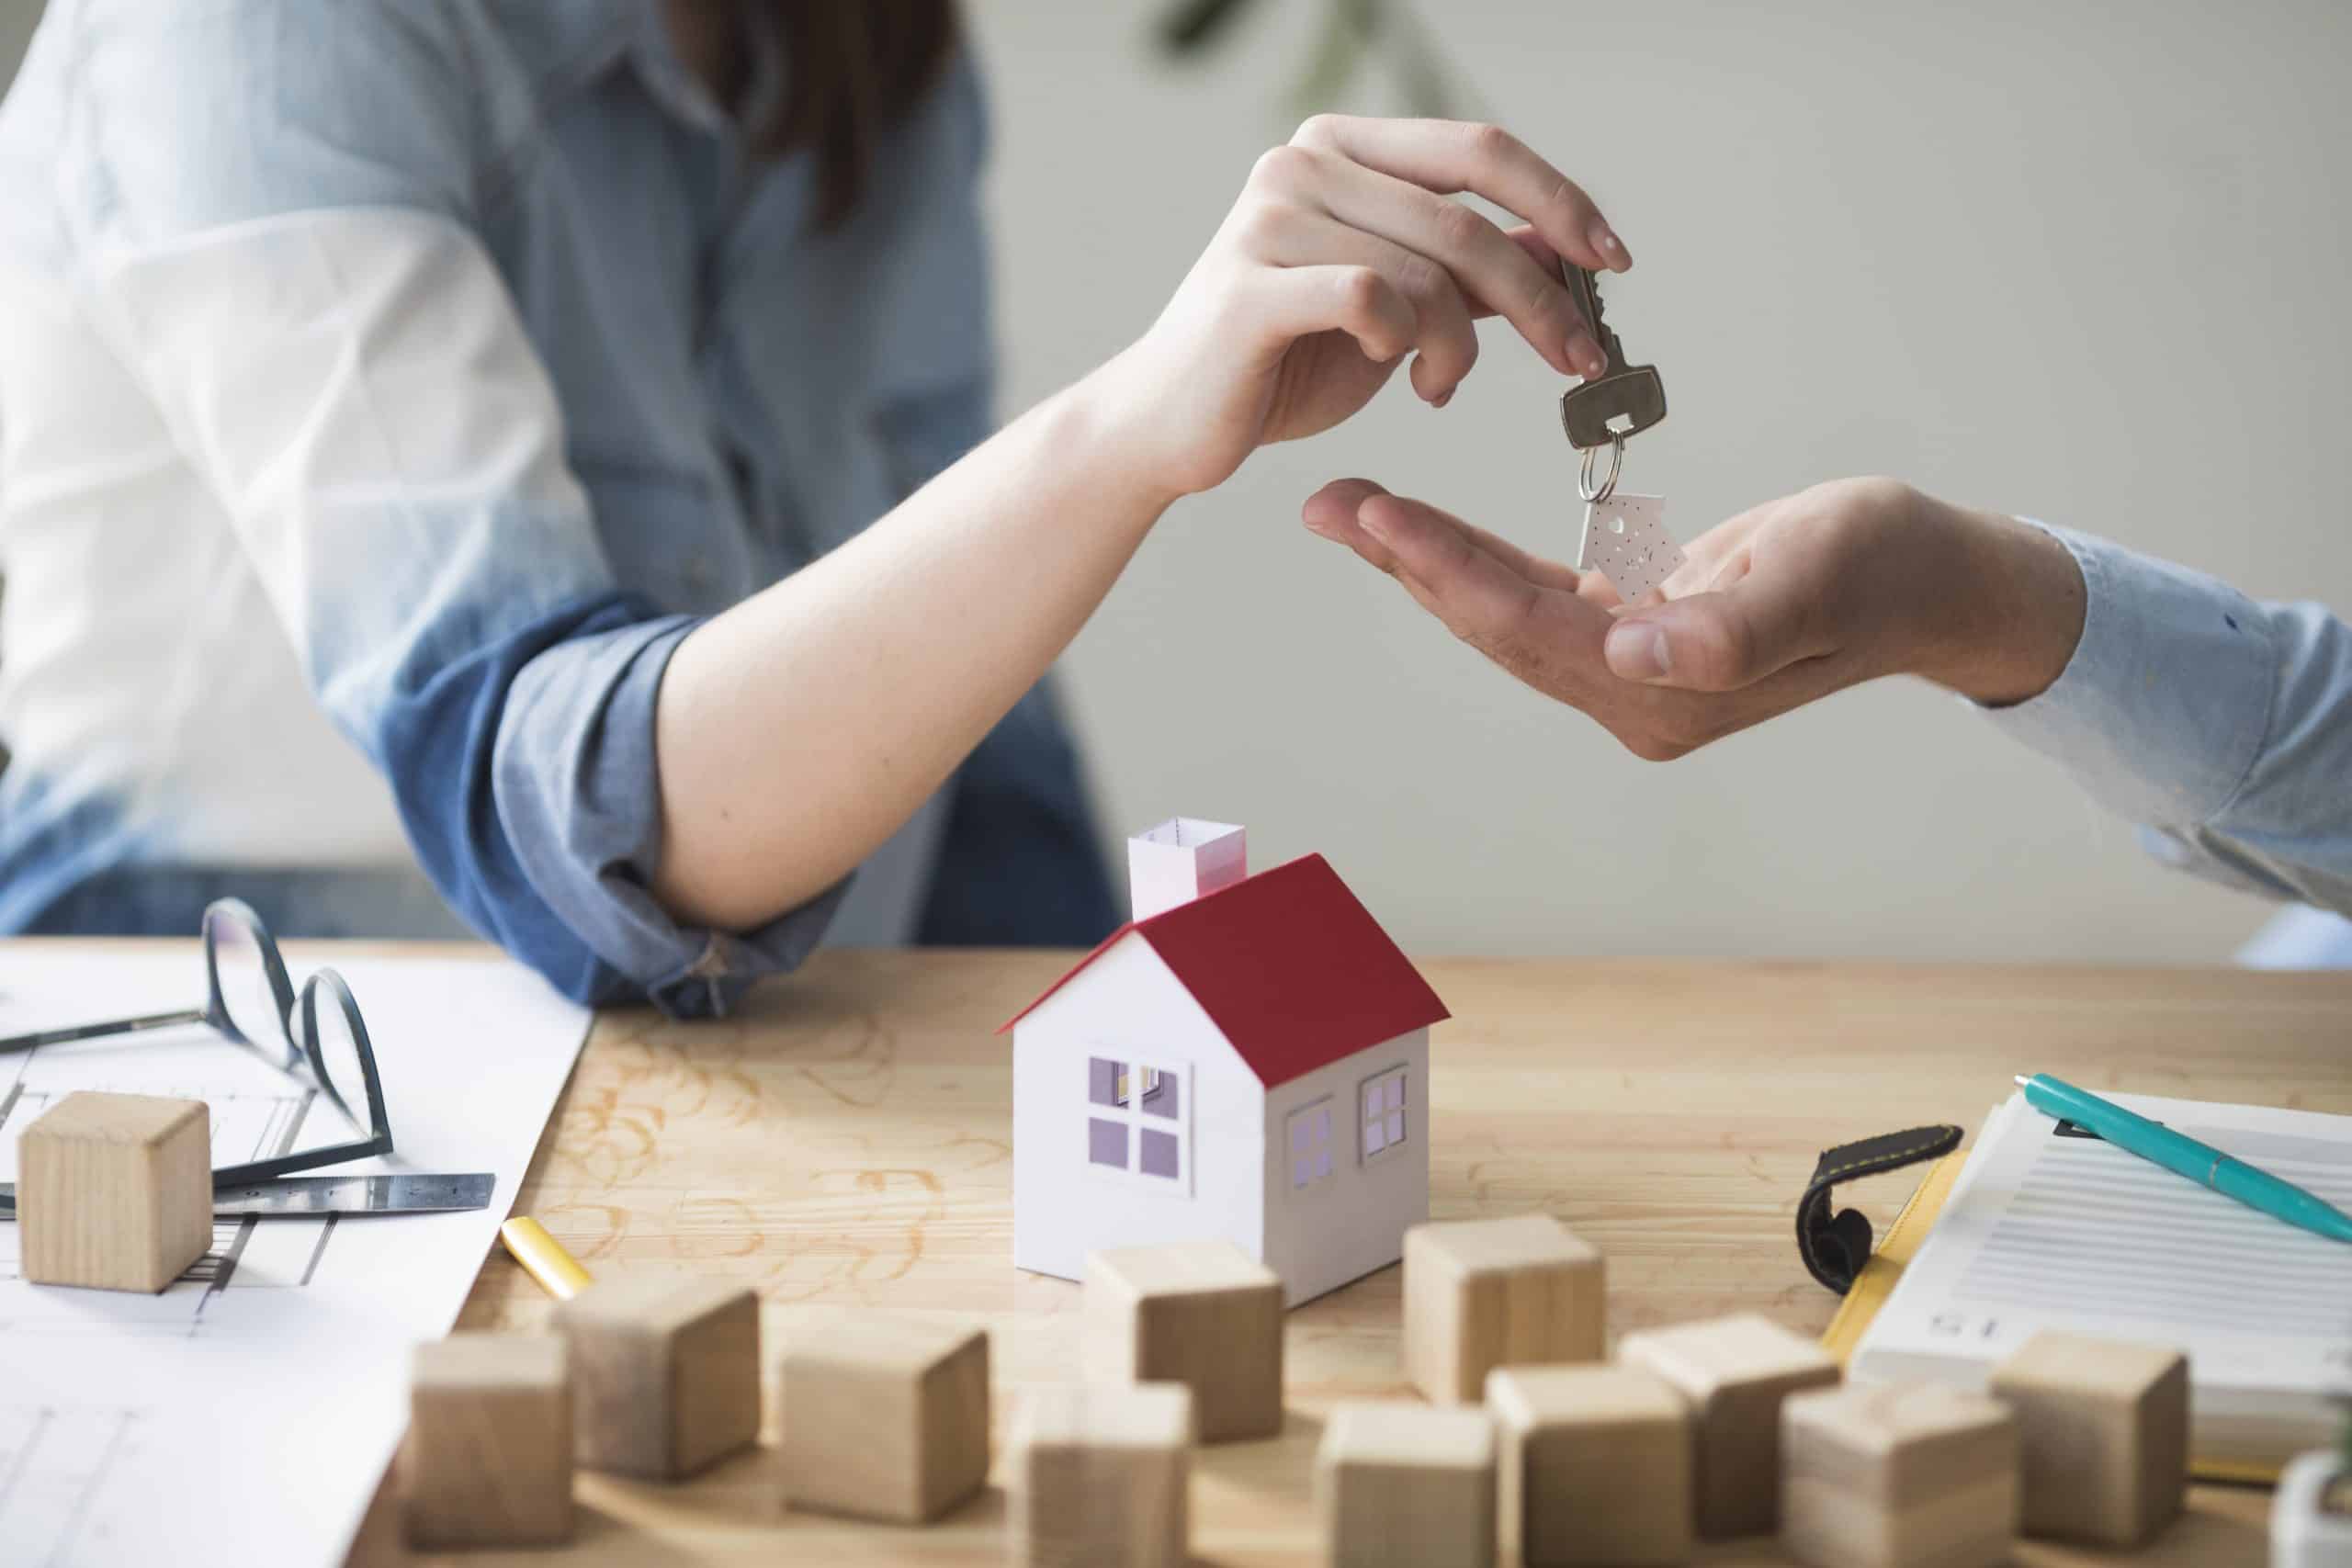 Compra de casas no se frenan ante la subida de tipos